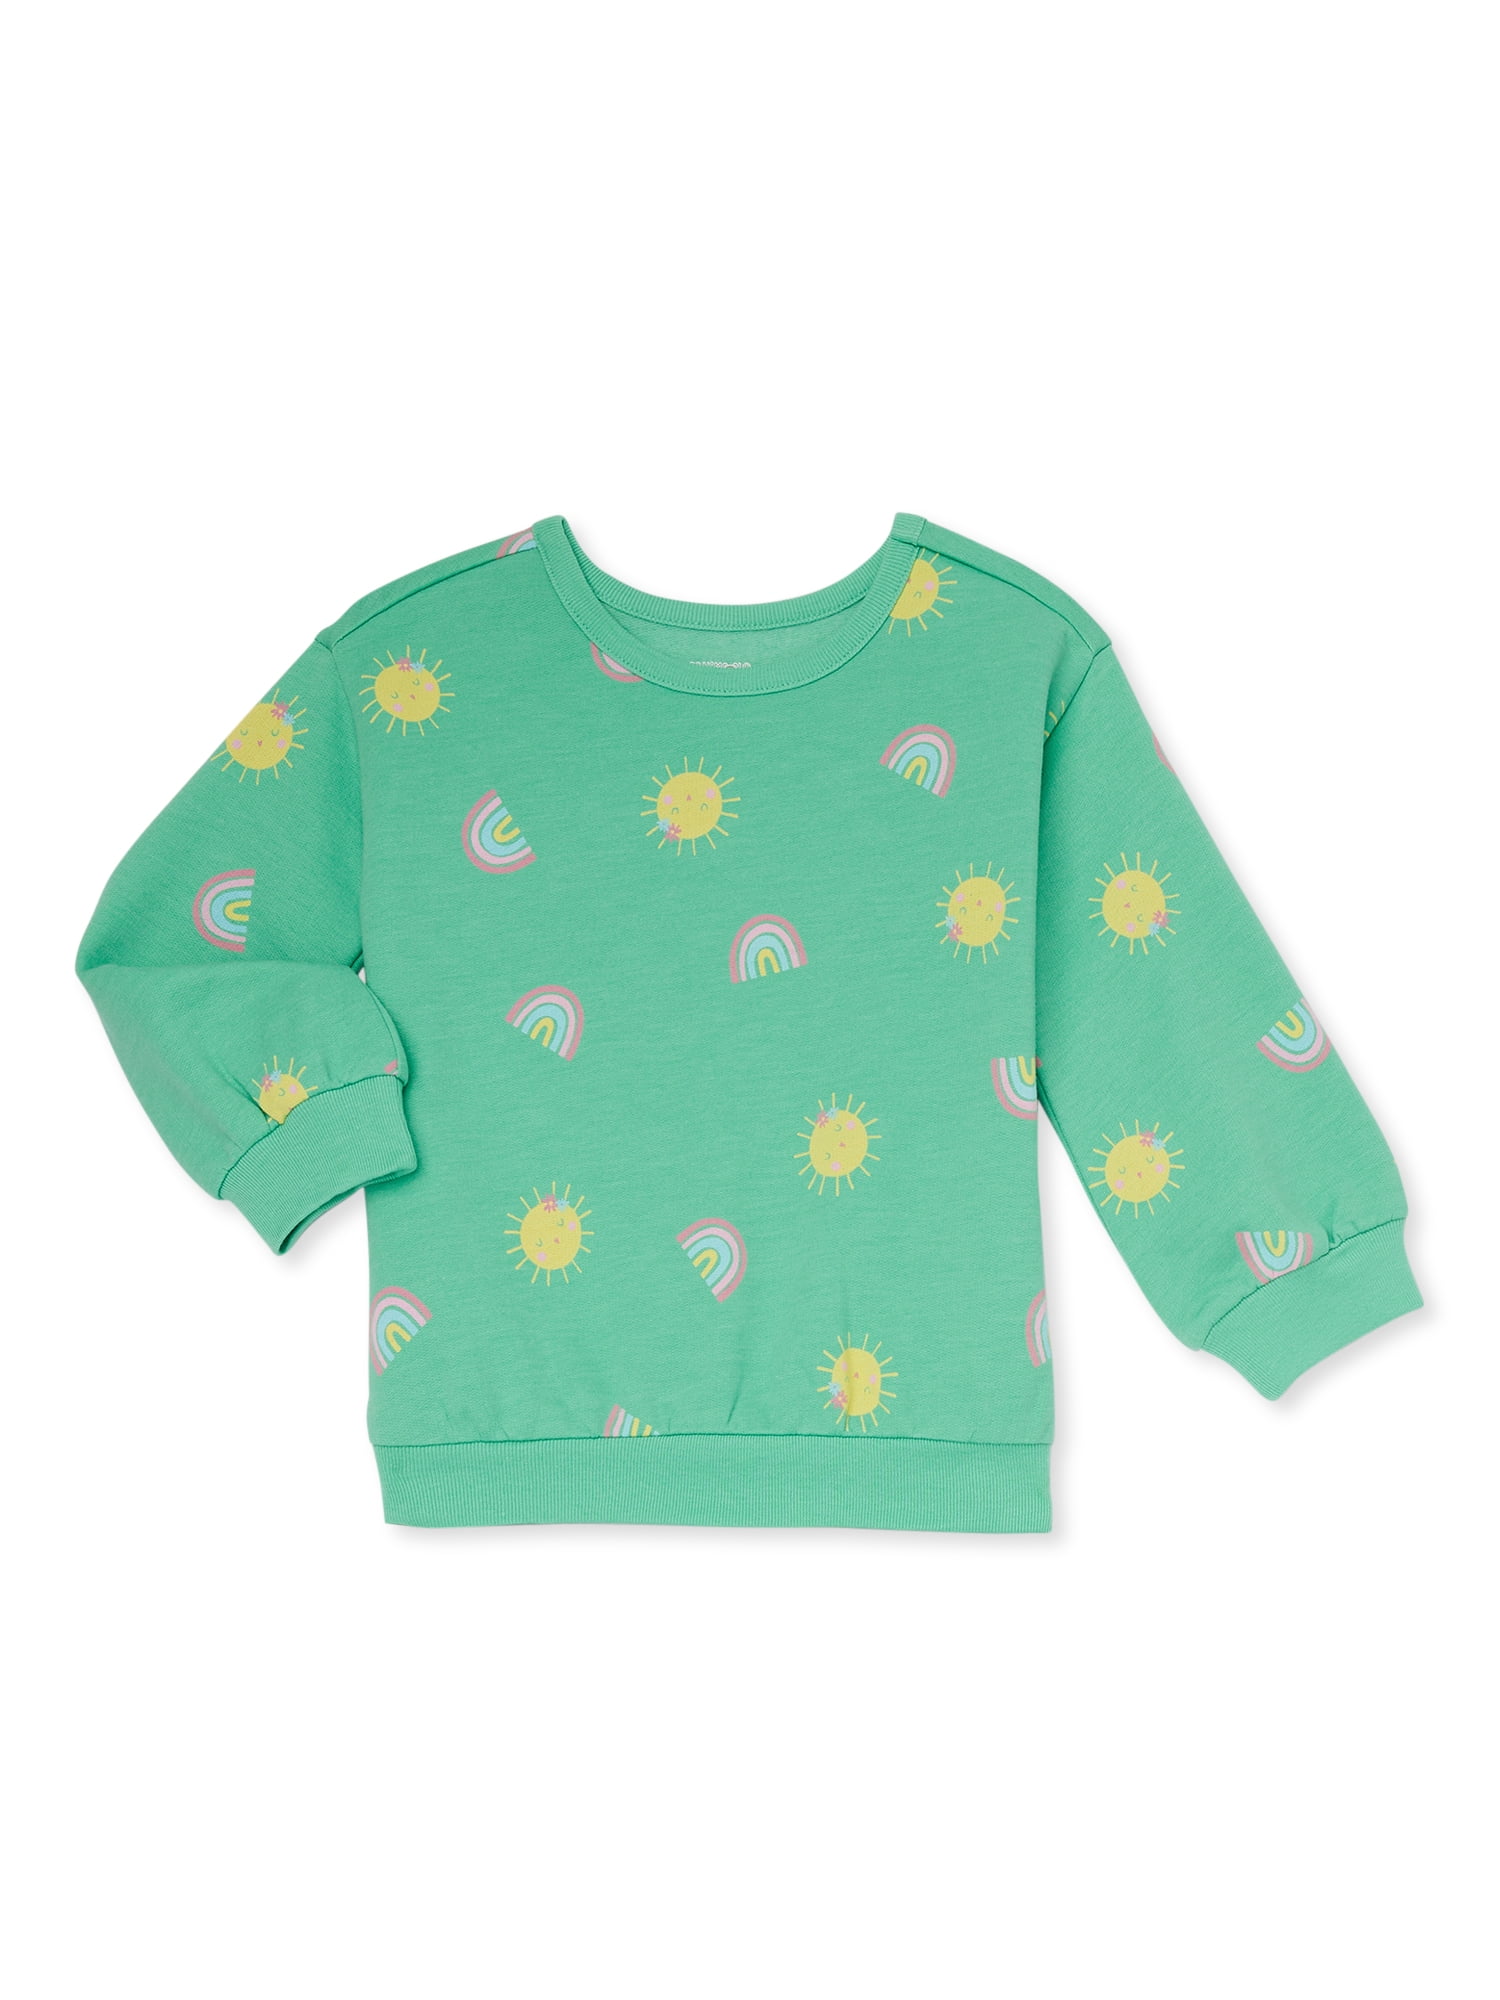 Garanimals Toddler Girl Print Fleece Top, Sizes 12 Months-5T - Walmart.com